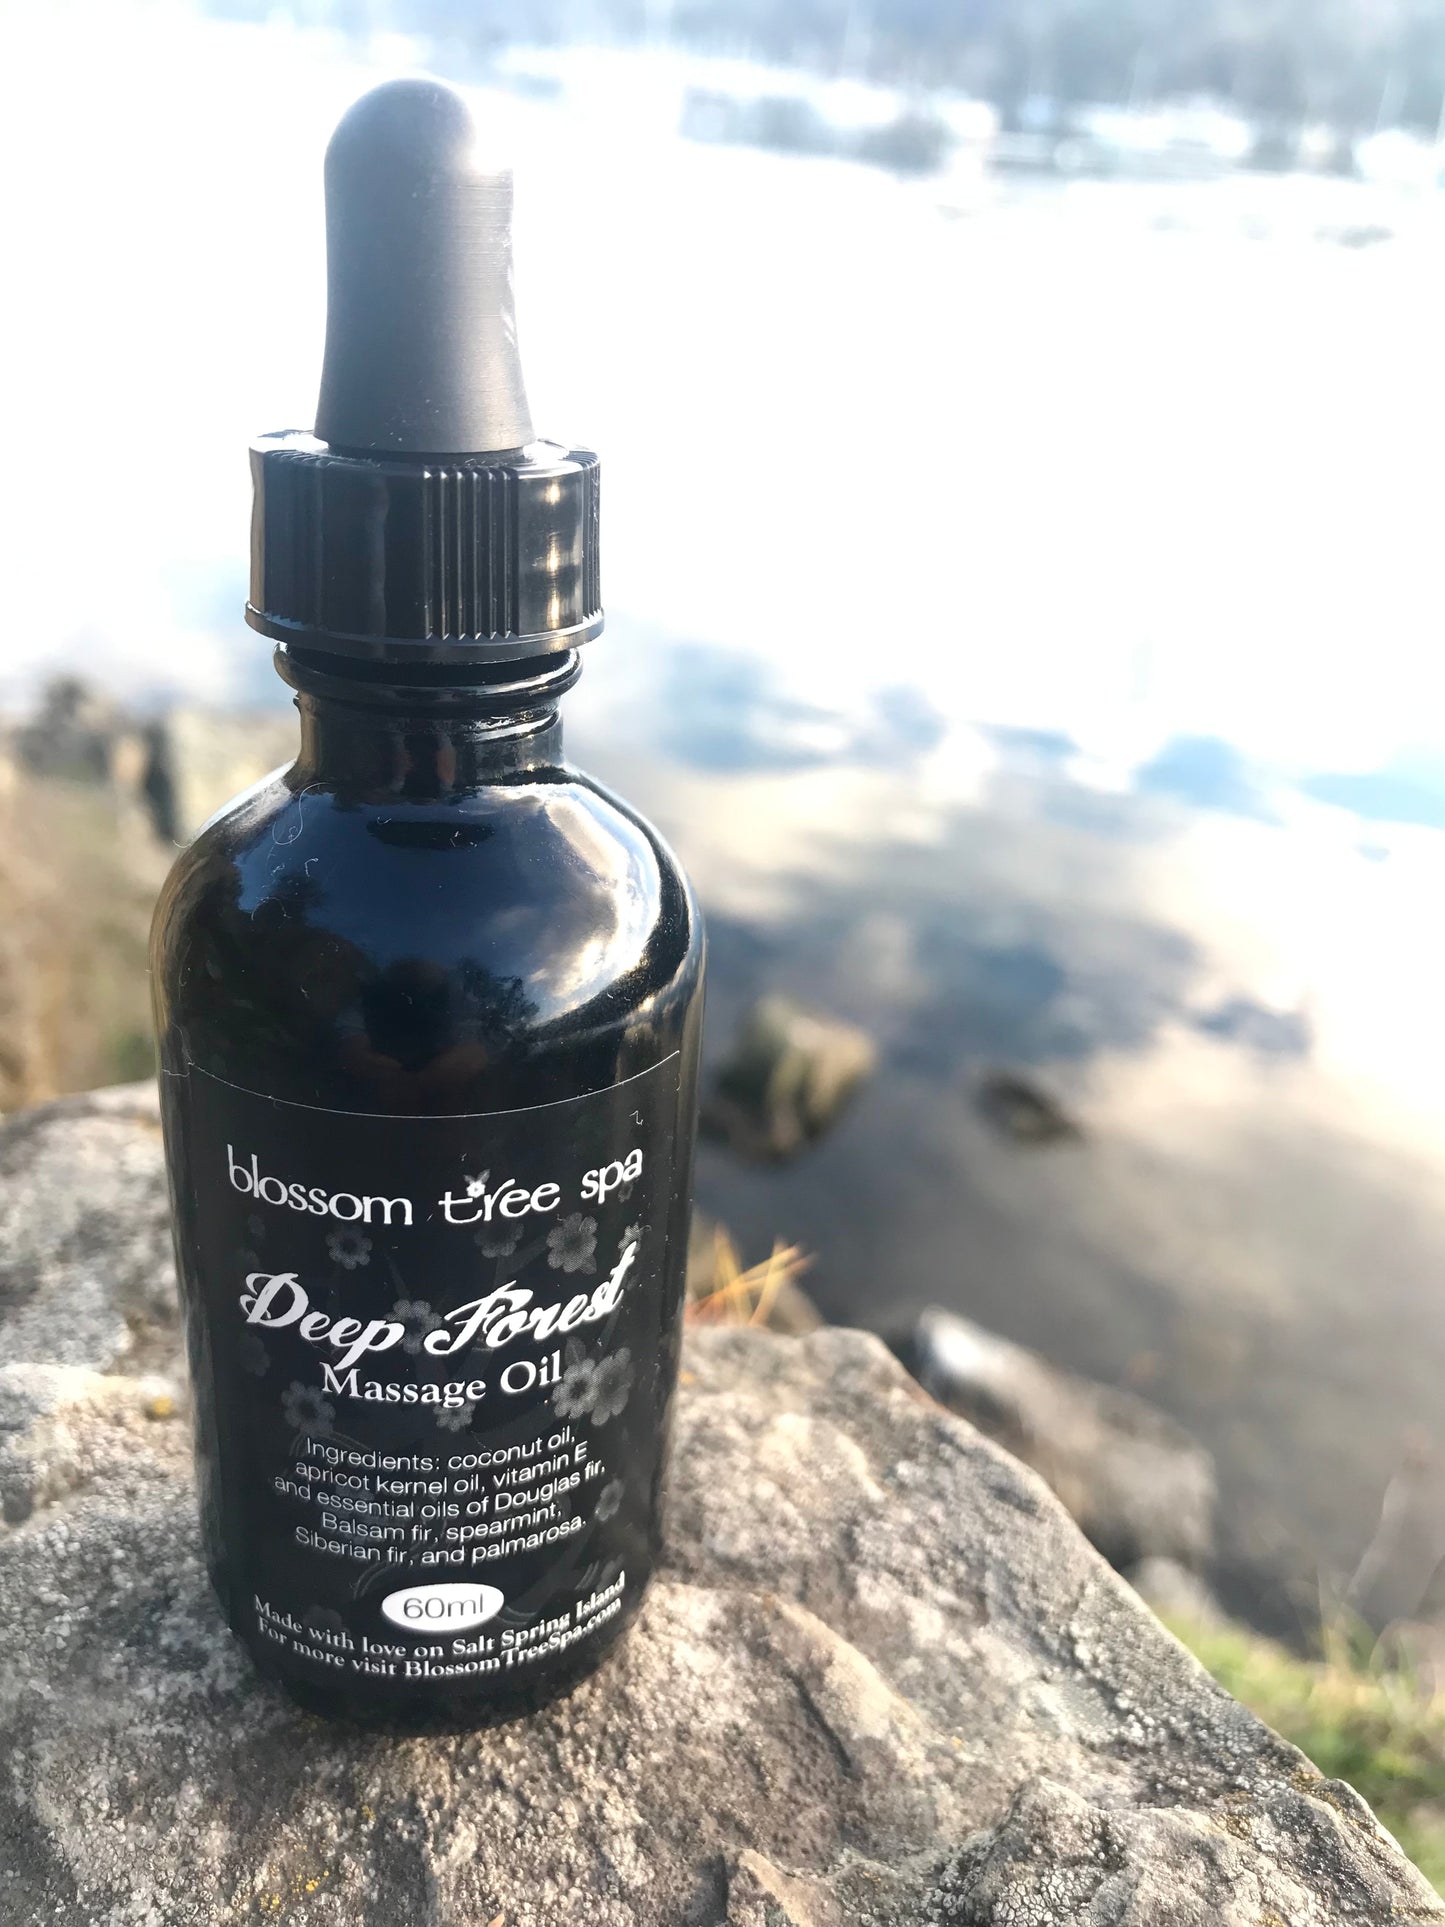 Deep forest Massage oil